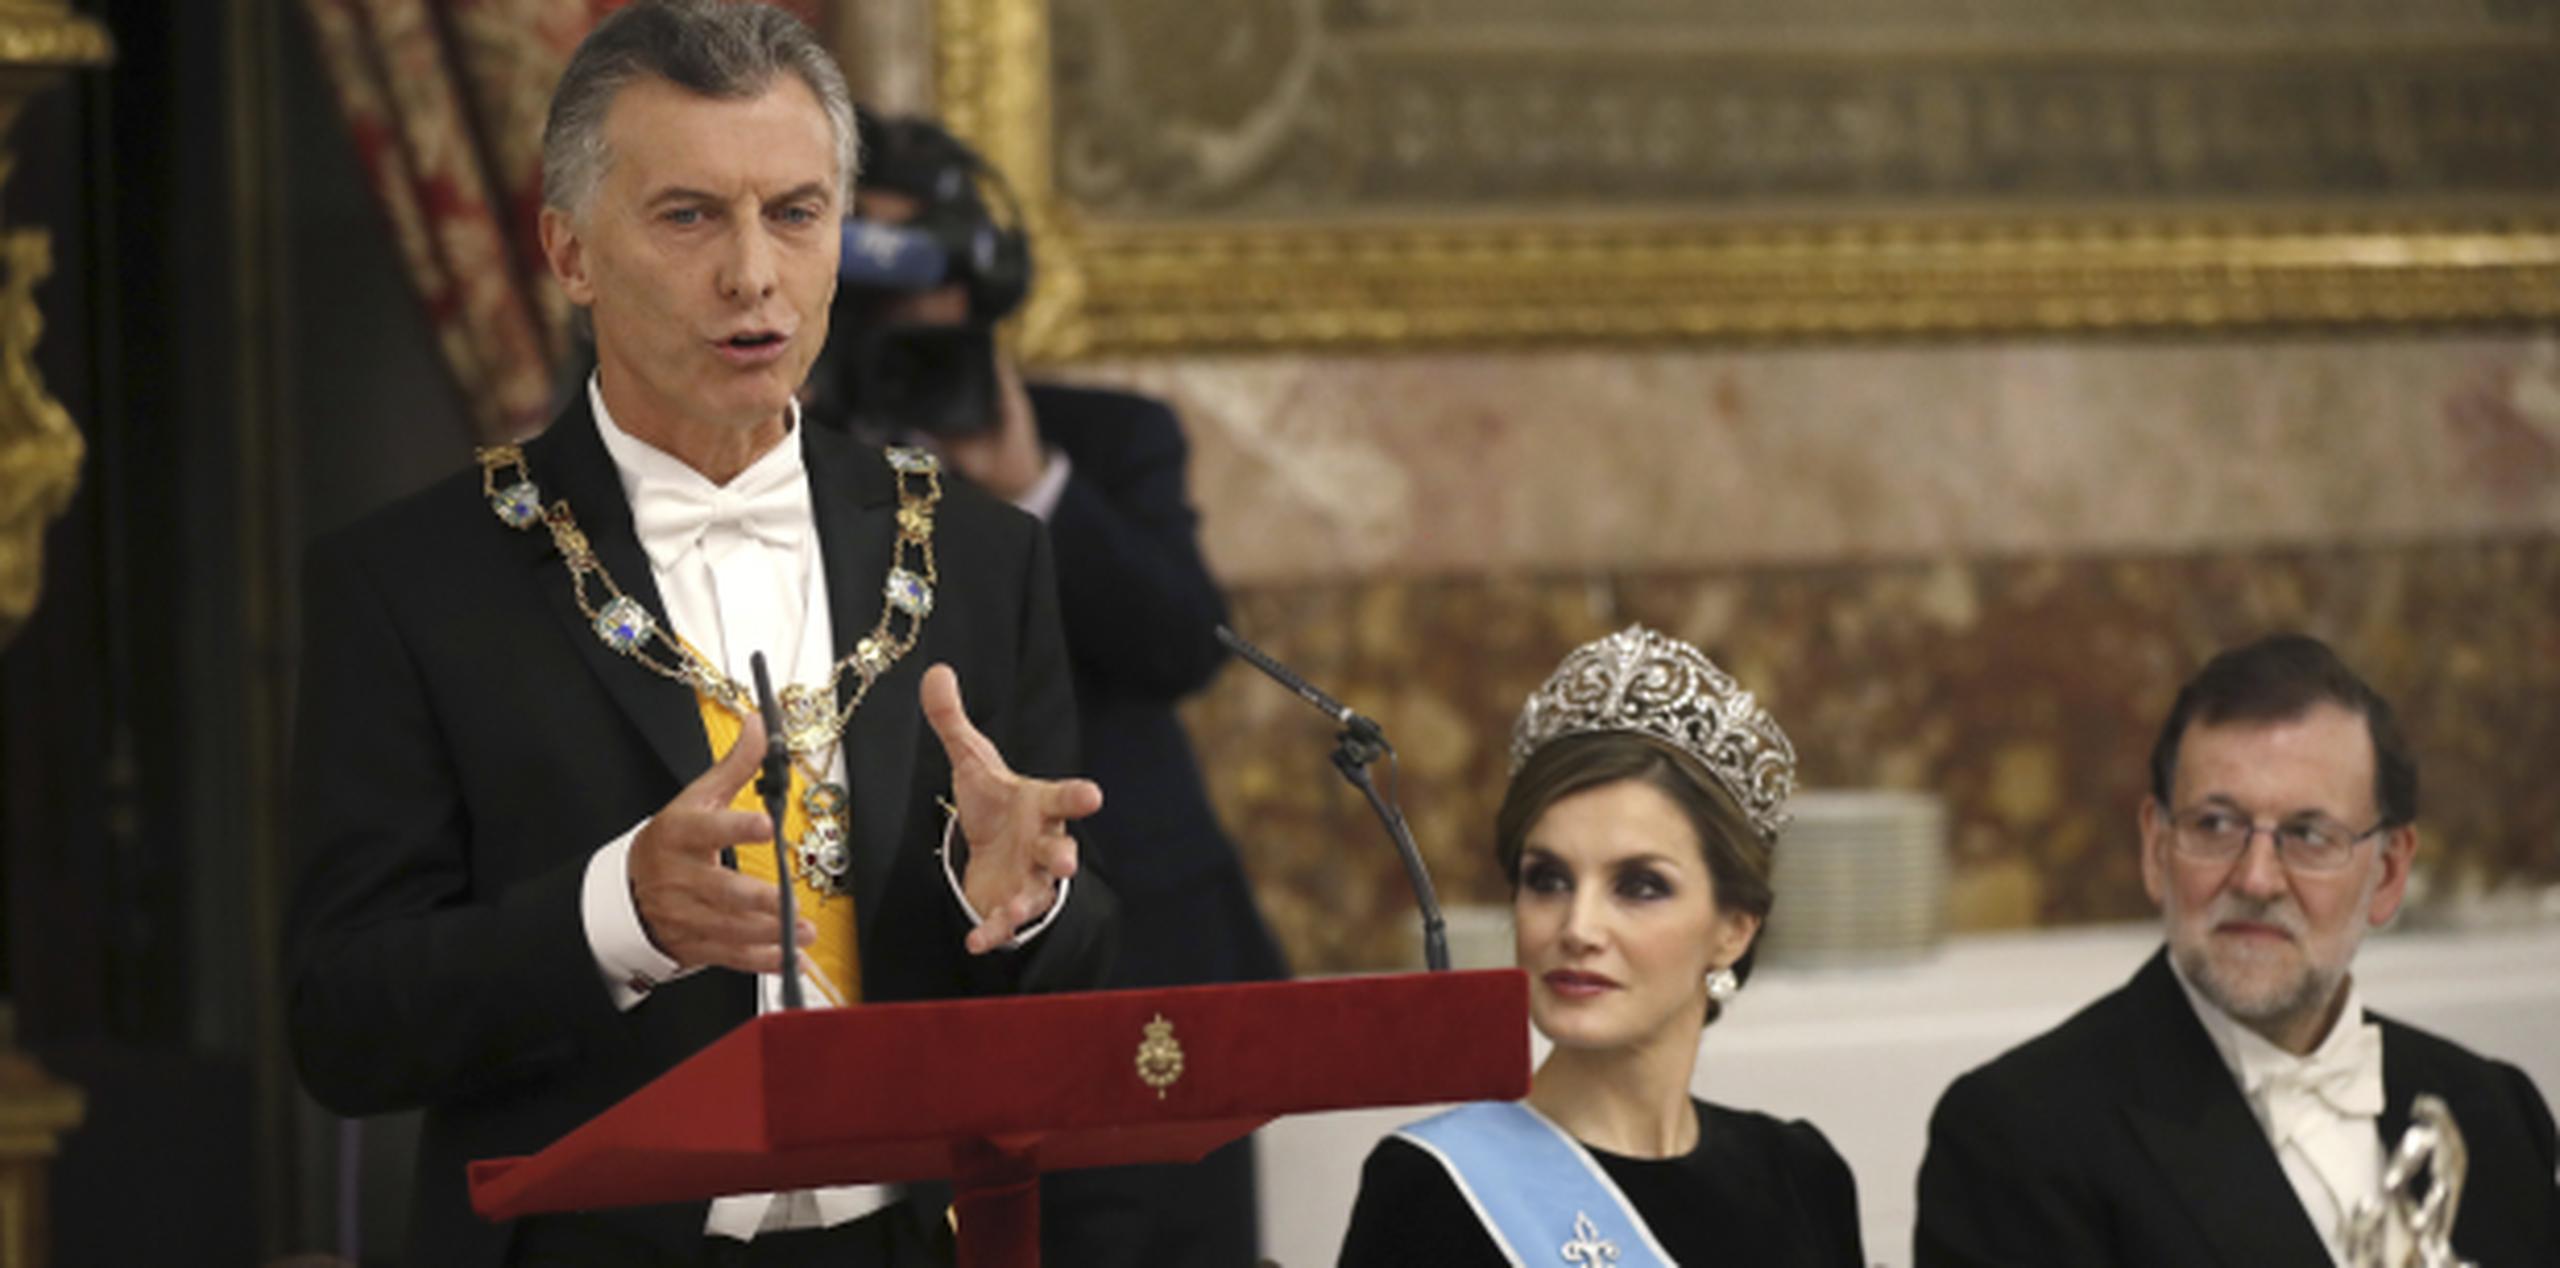 Macri se encuentra de visita en España y anoche fue recibido por los monarcas de ese país europeo. (Chema Moya, Pool Photo vía AP)